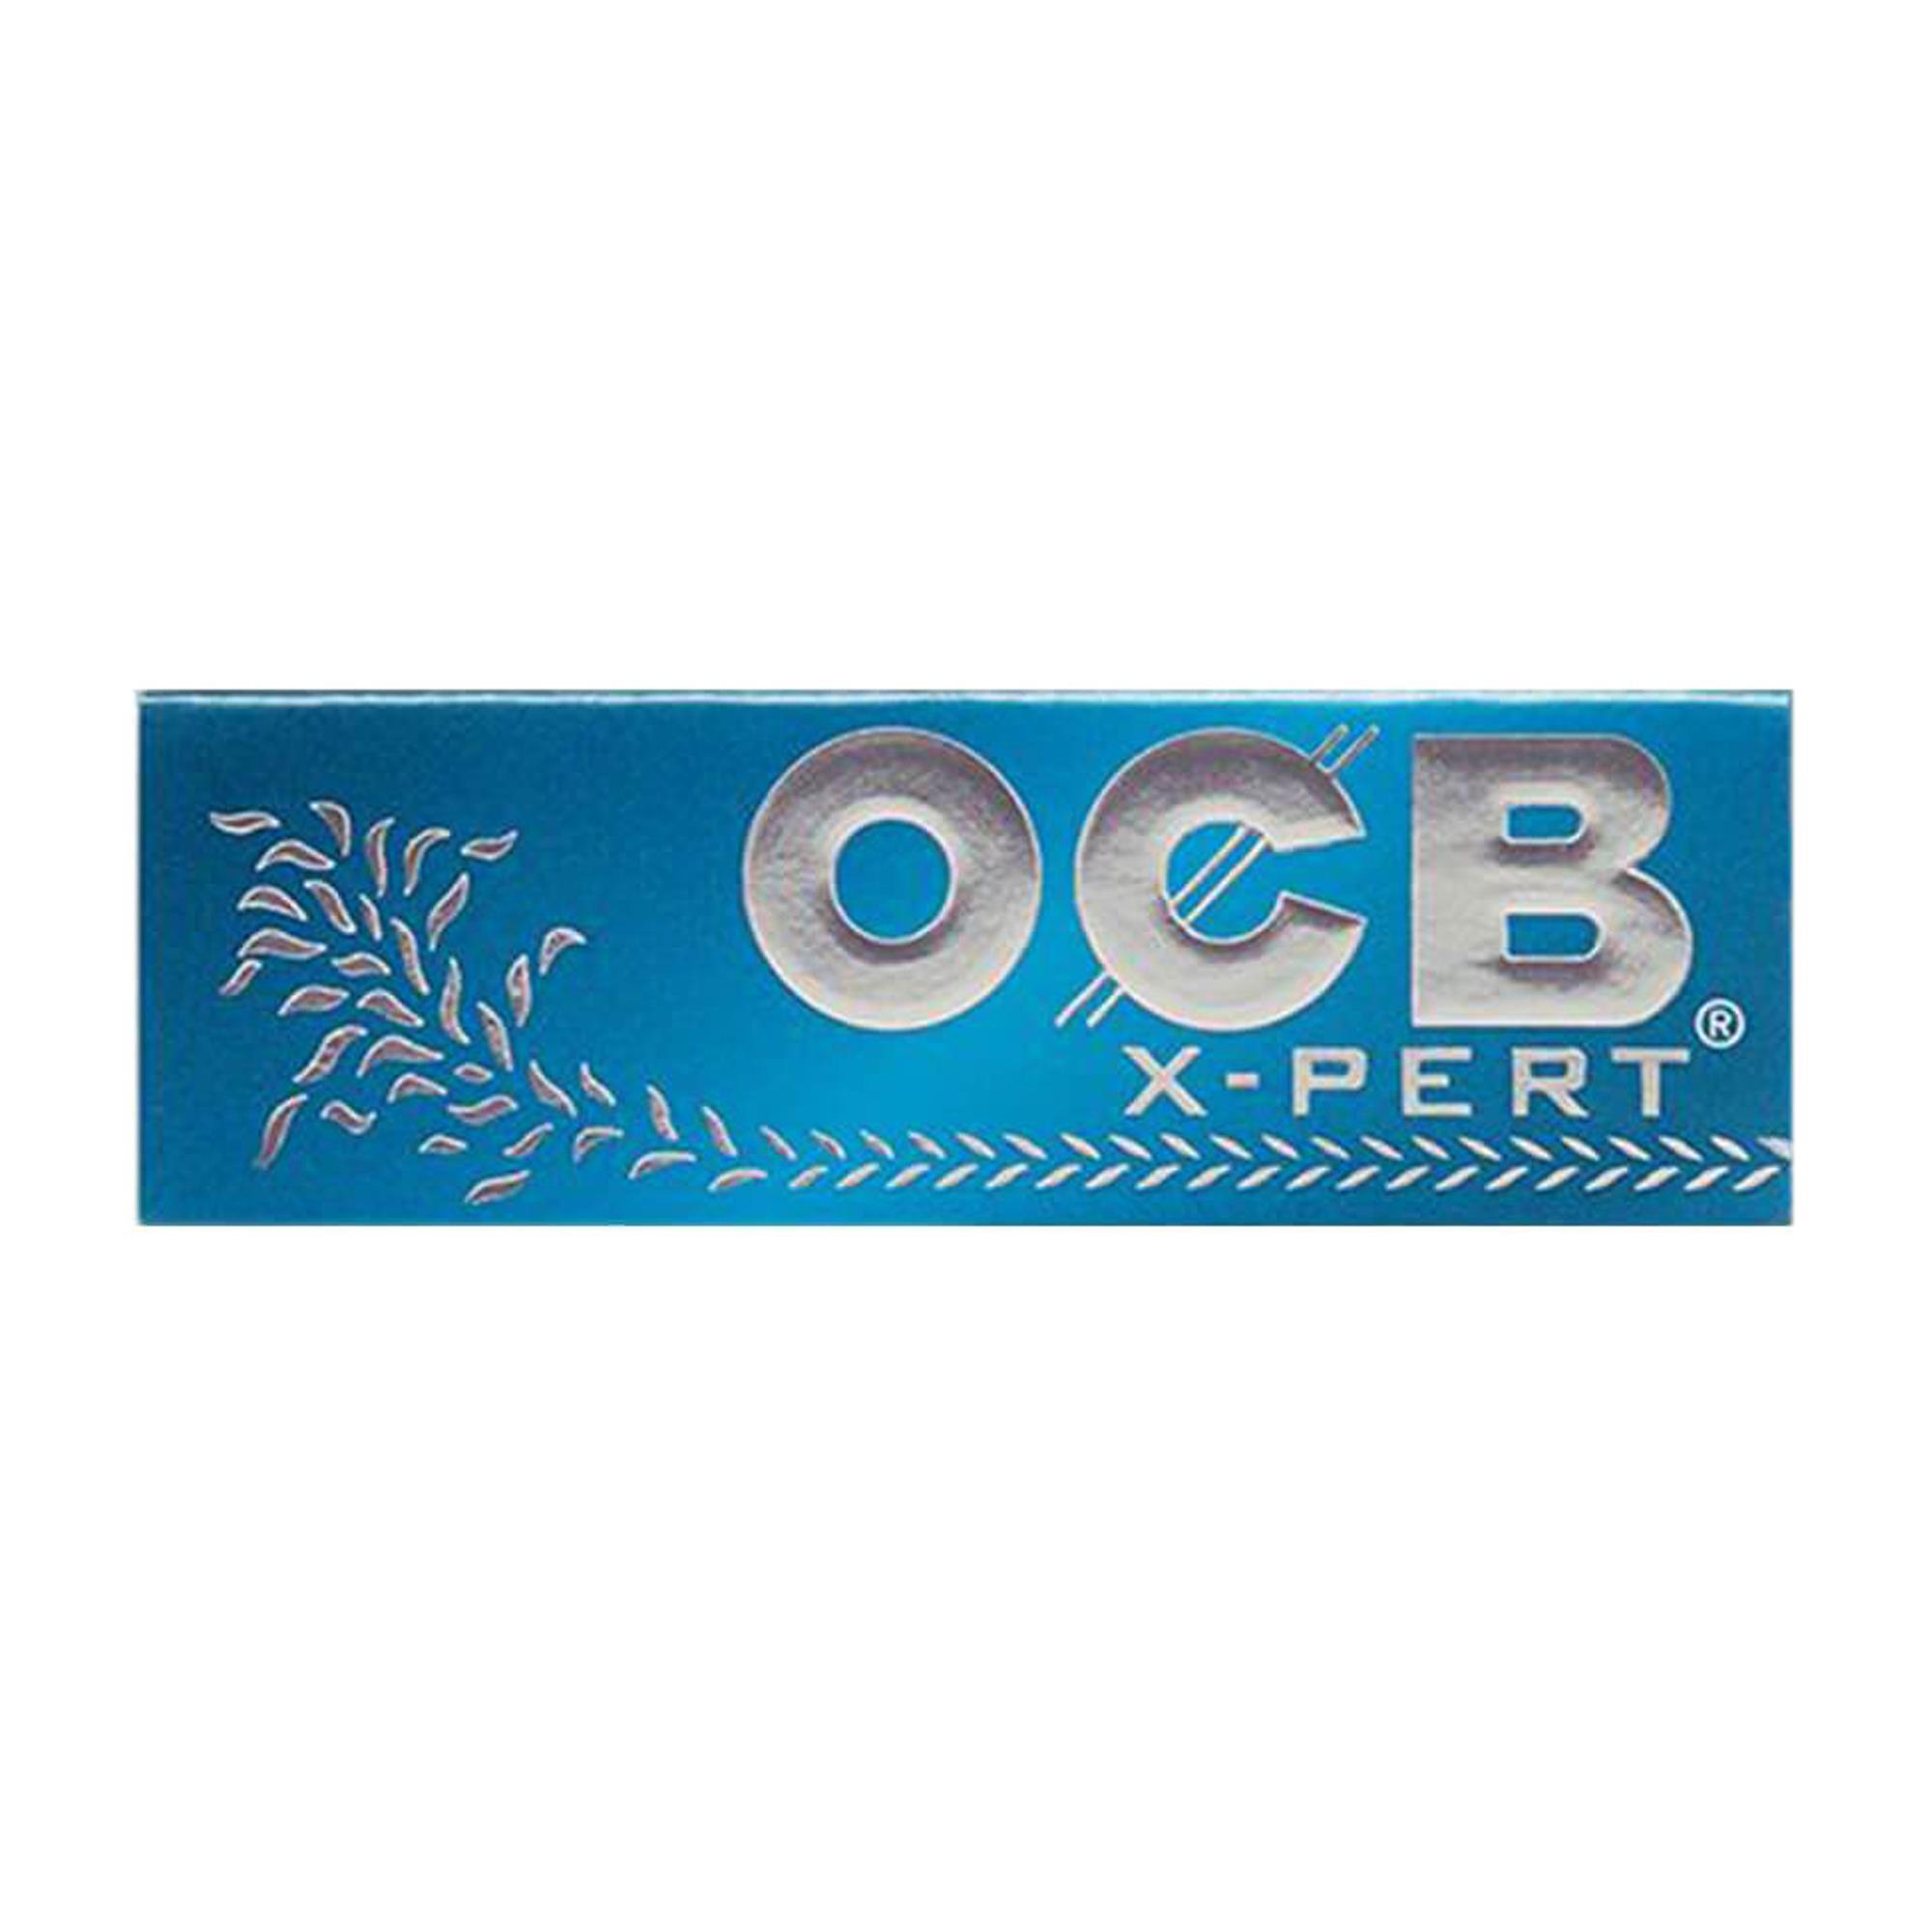 OCB X-PERT